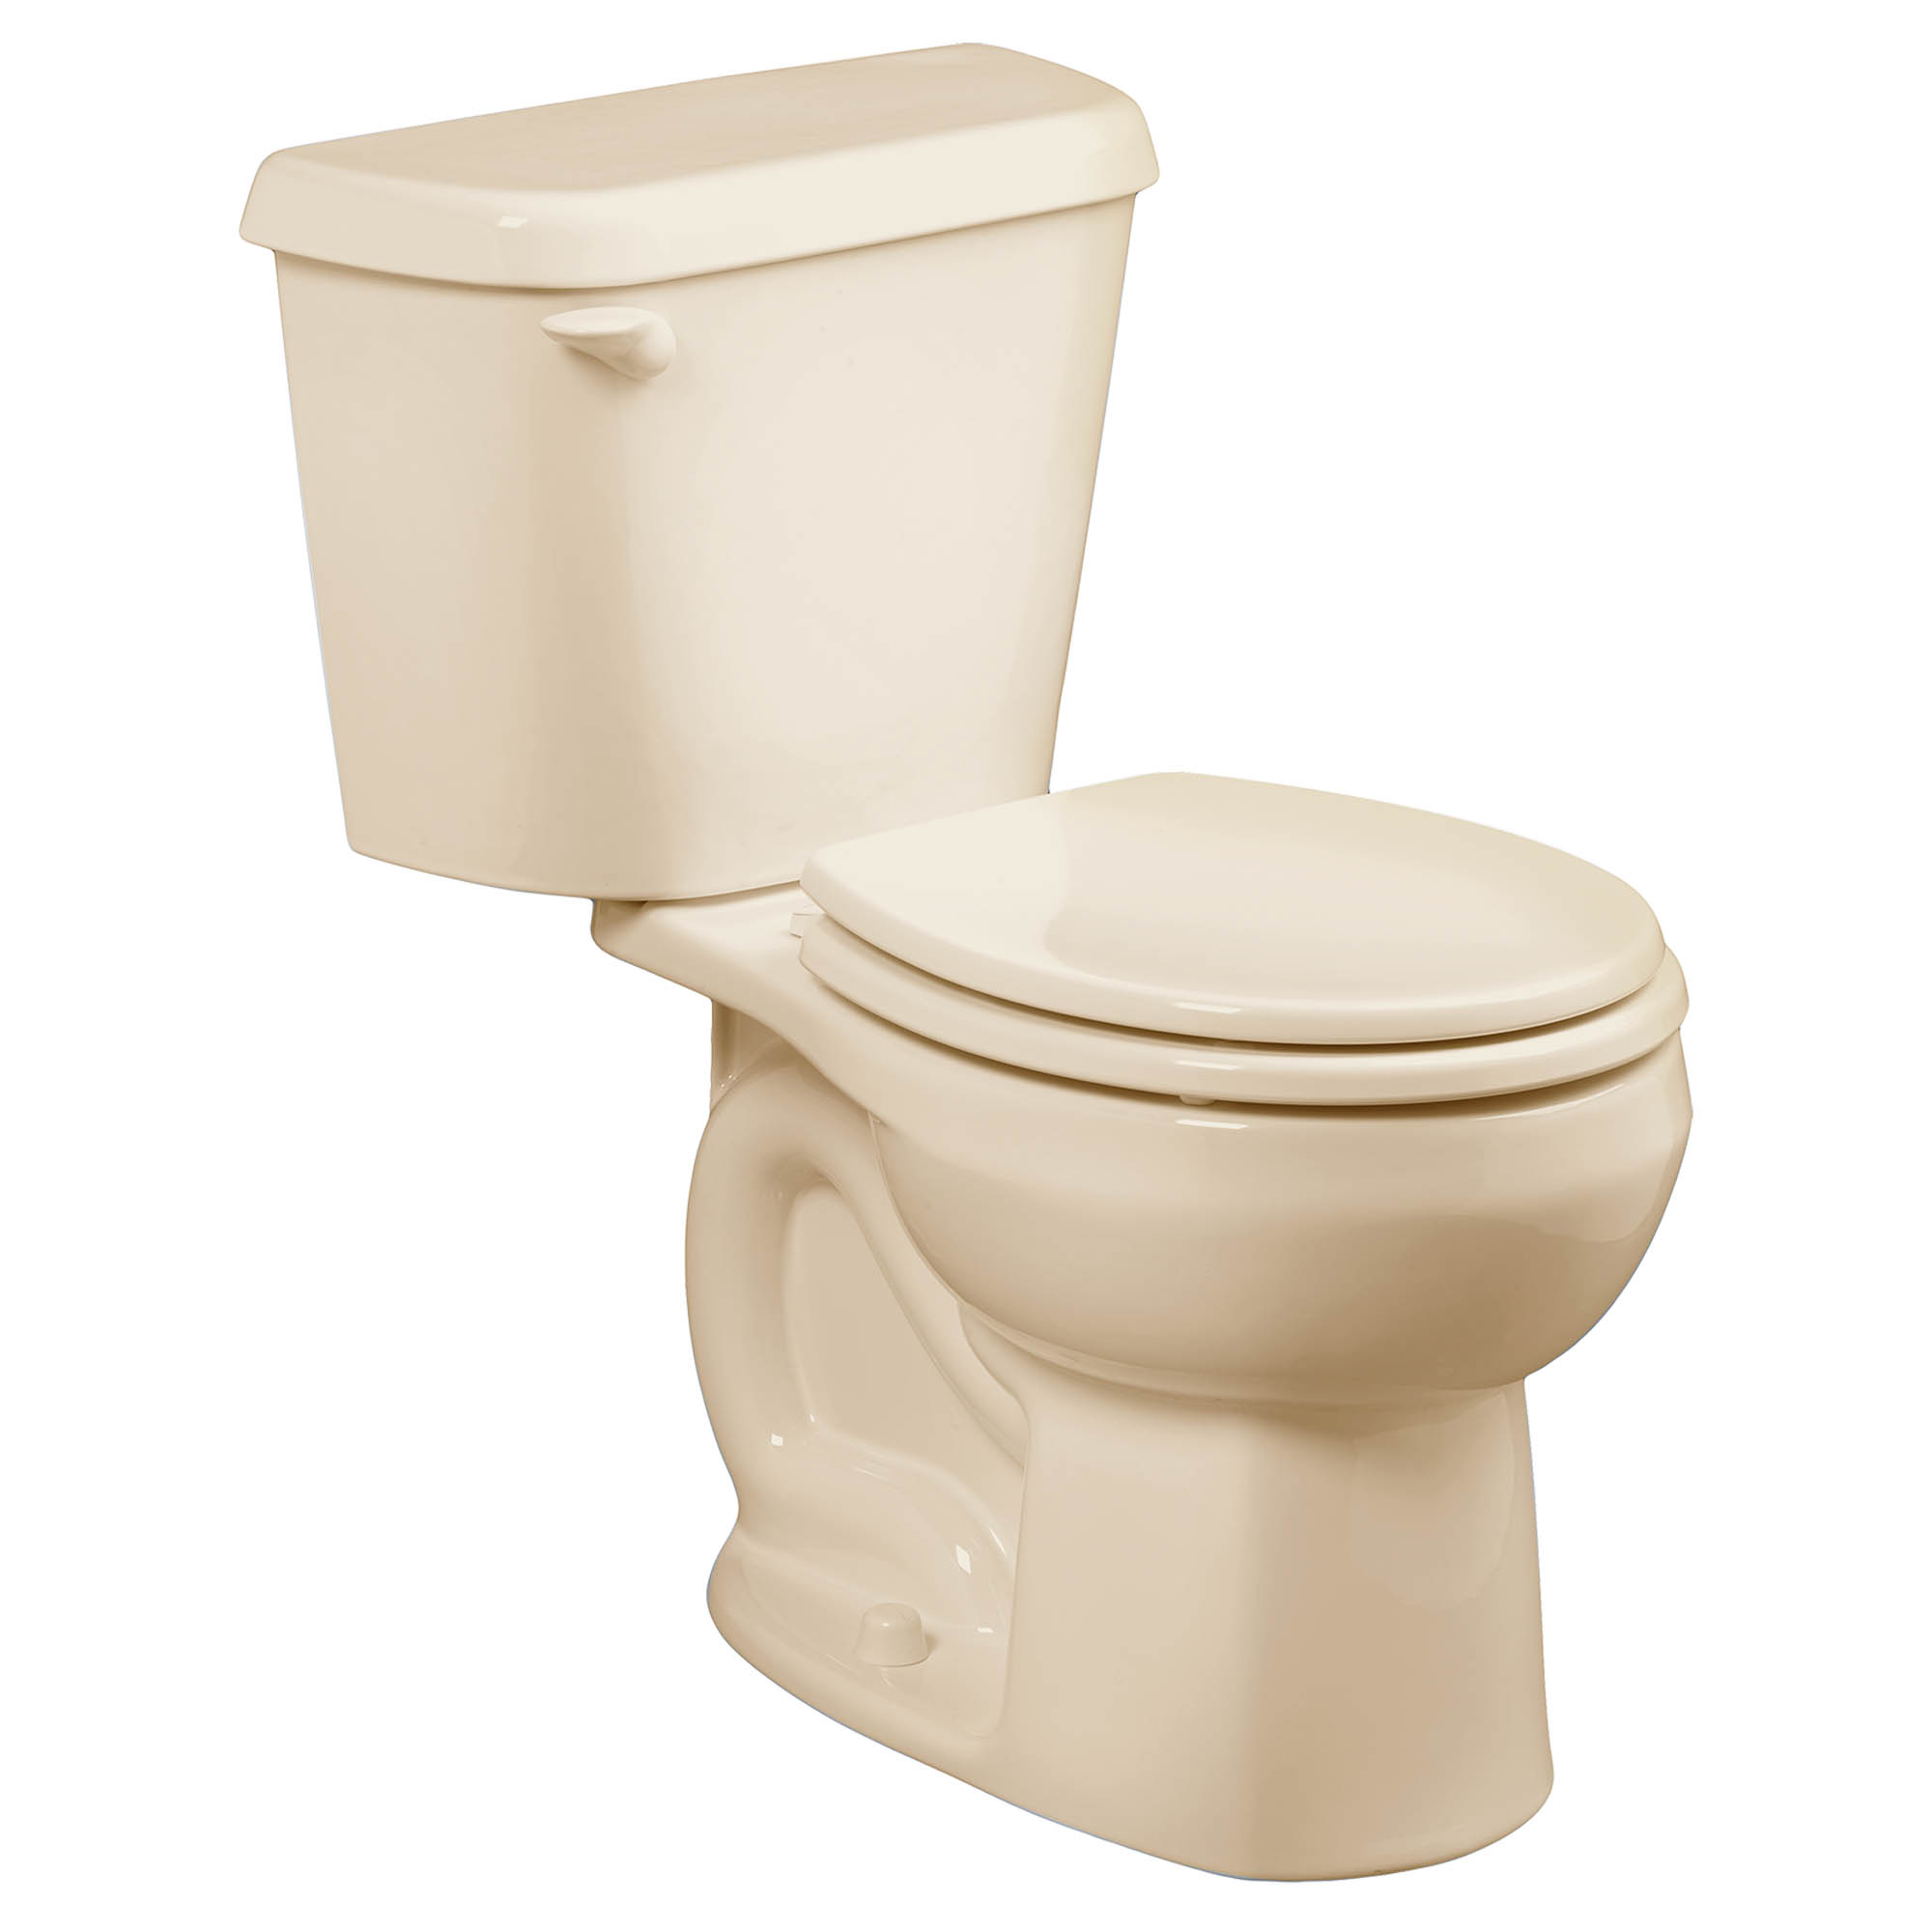 Toilette Colony, 2 pièces, 1,28 gpc/4,8 lpc, à cuvette au devant rond à hauteur régulière, à encastrer 10 po, sans siège